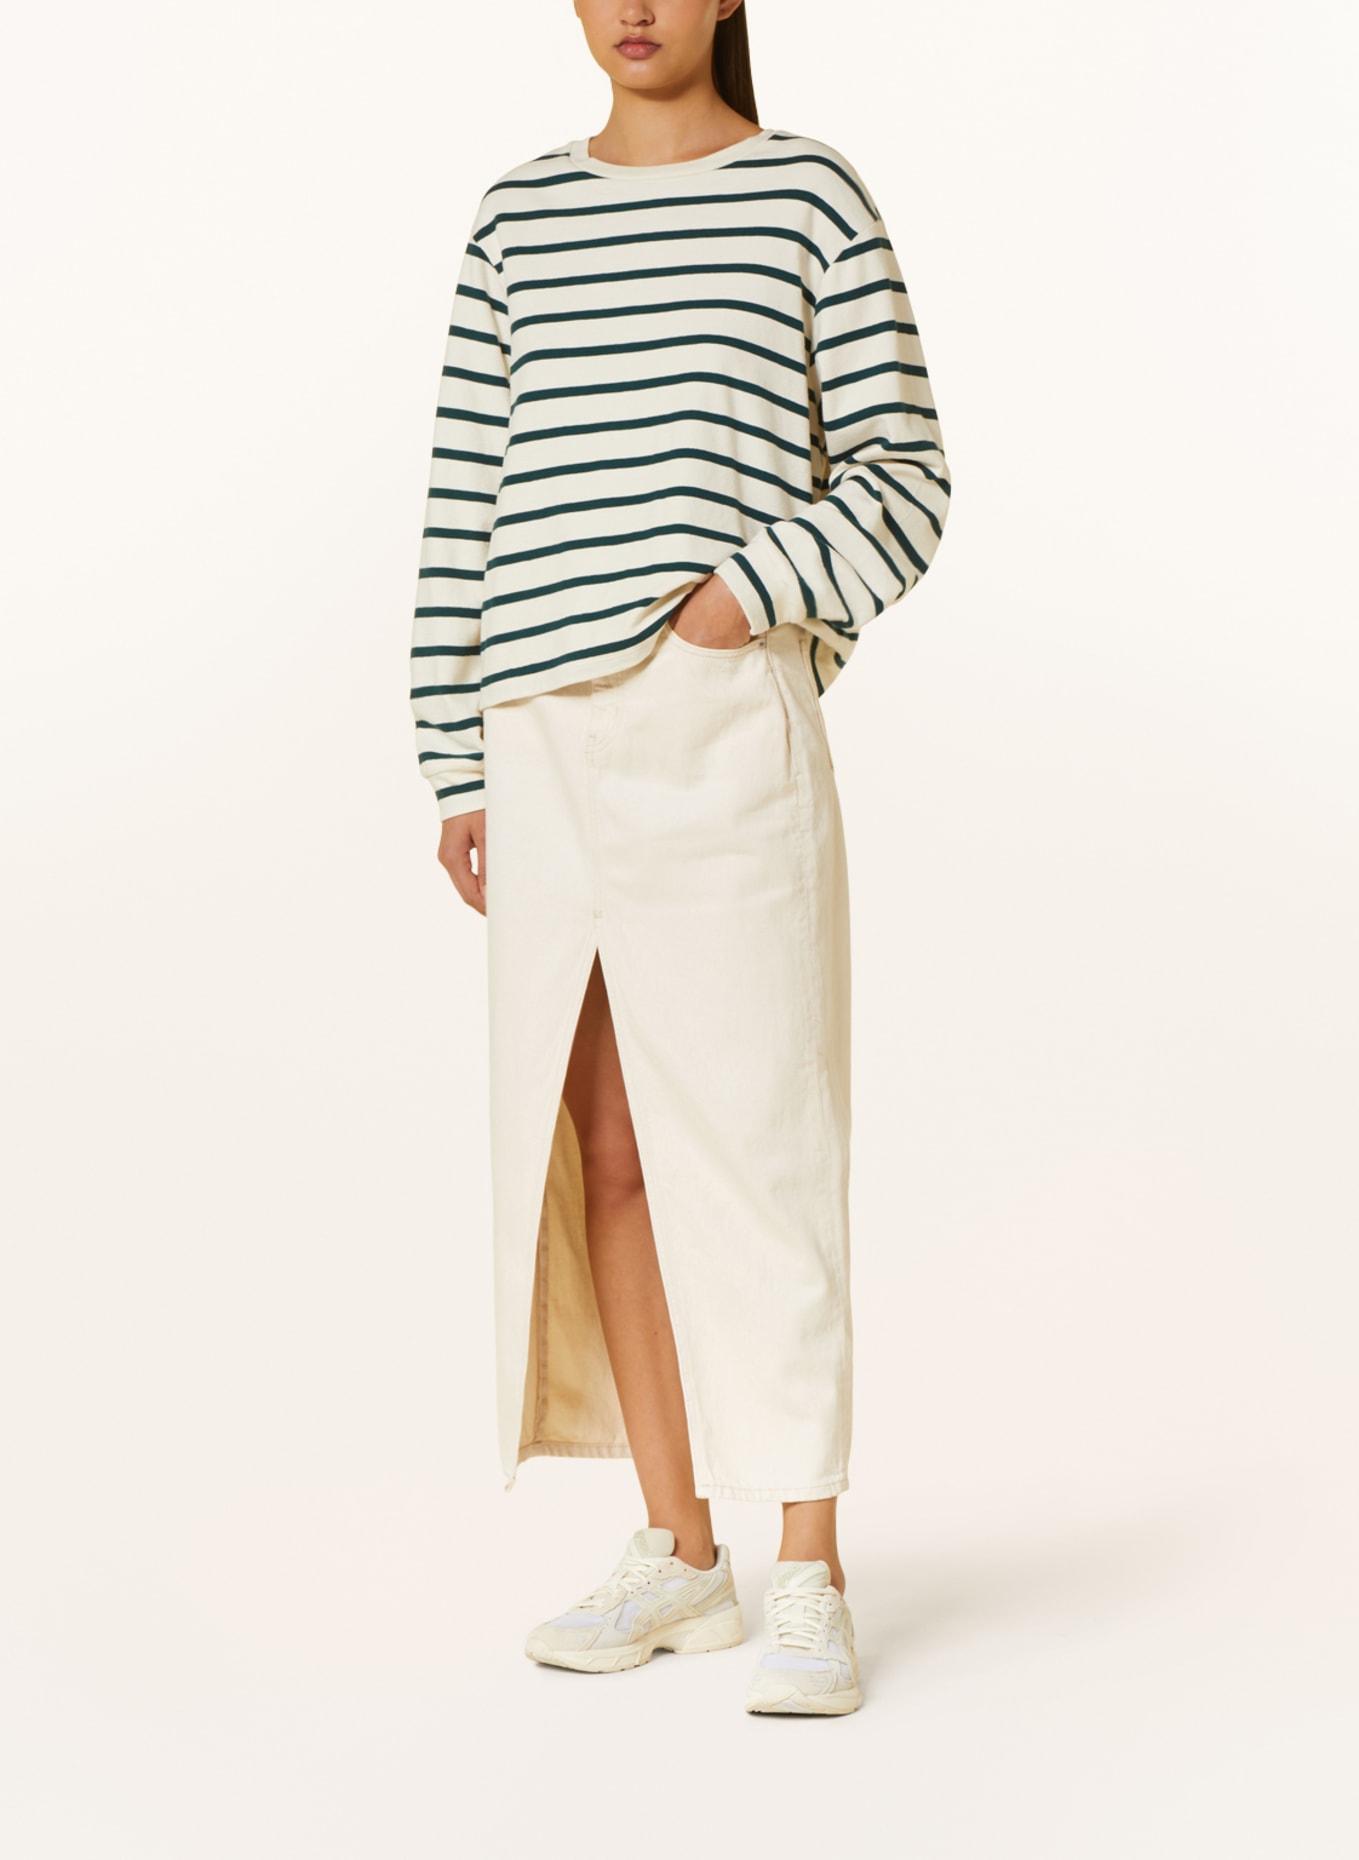 Calvin Klein Jeans Denim skirt, Color: 1AA Denim Light (Image 2)